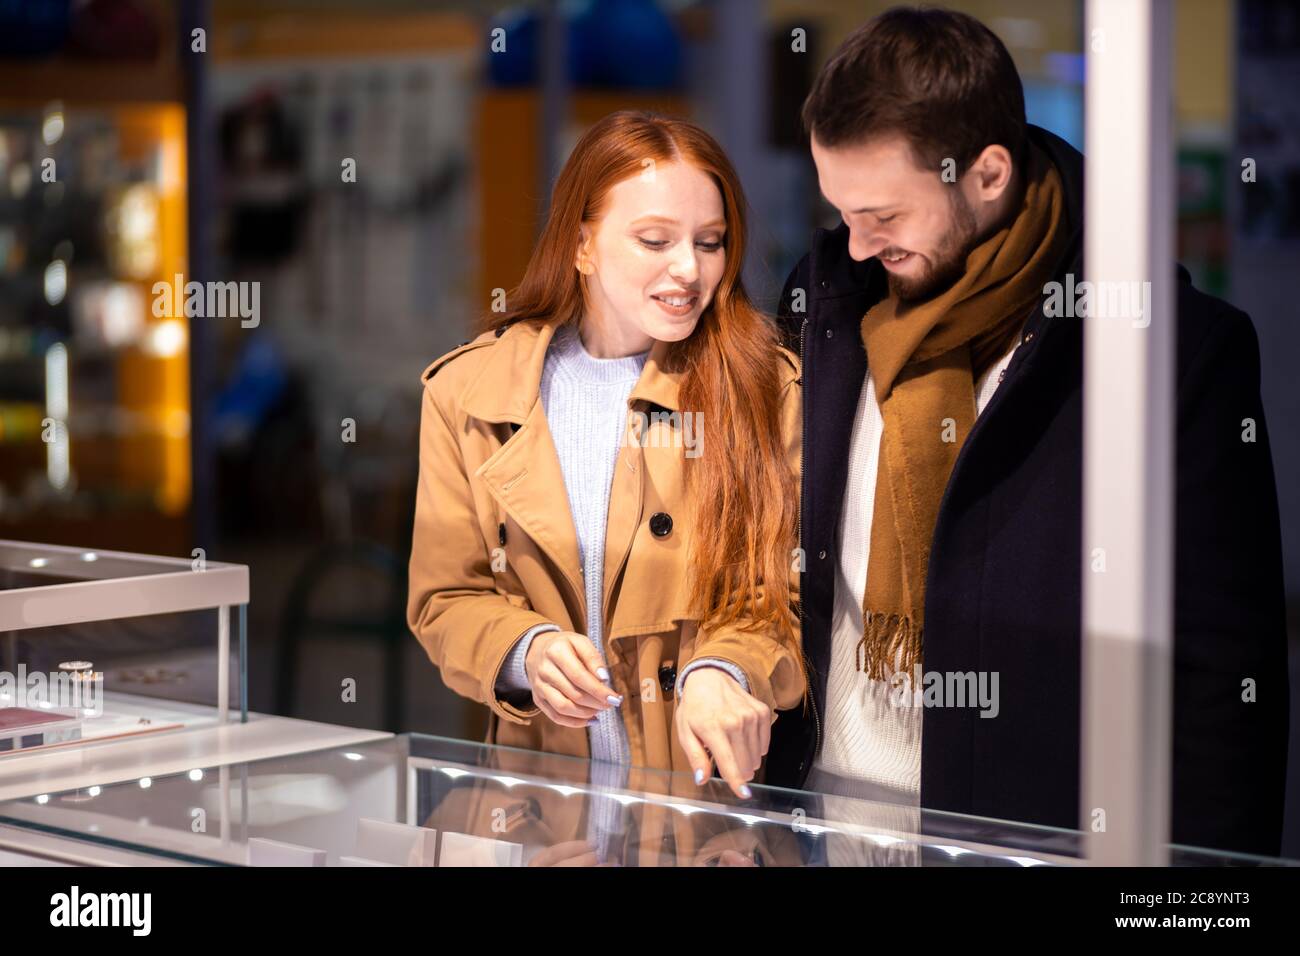 Junge kaukasische Frau zeigen an schönen Ring zu seinem Mann, gehen zu kaufen. Liebe, Beziehungskonzept Stockfoto